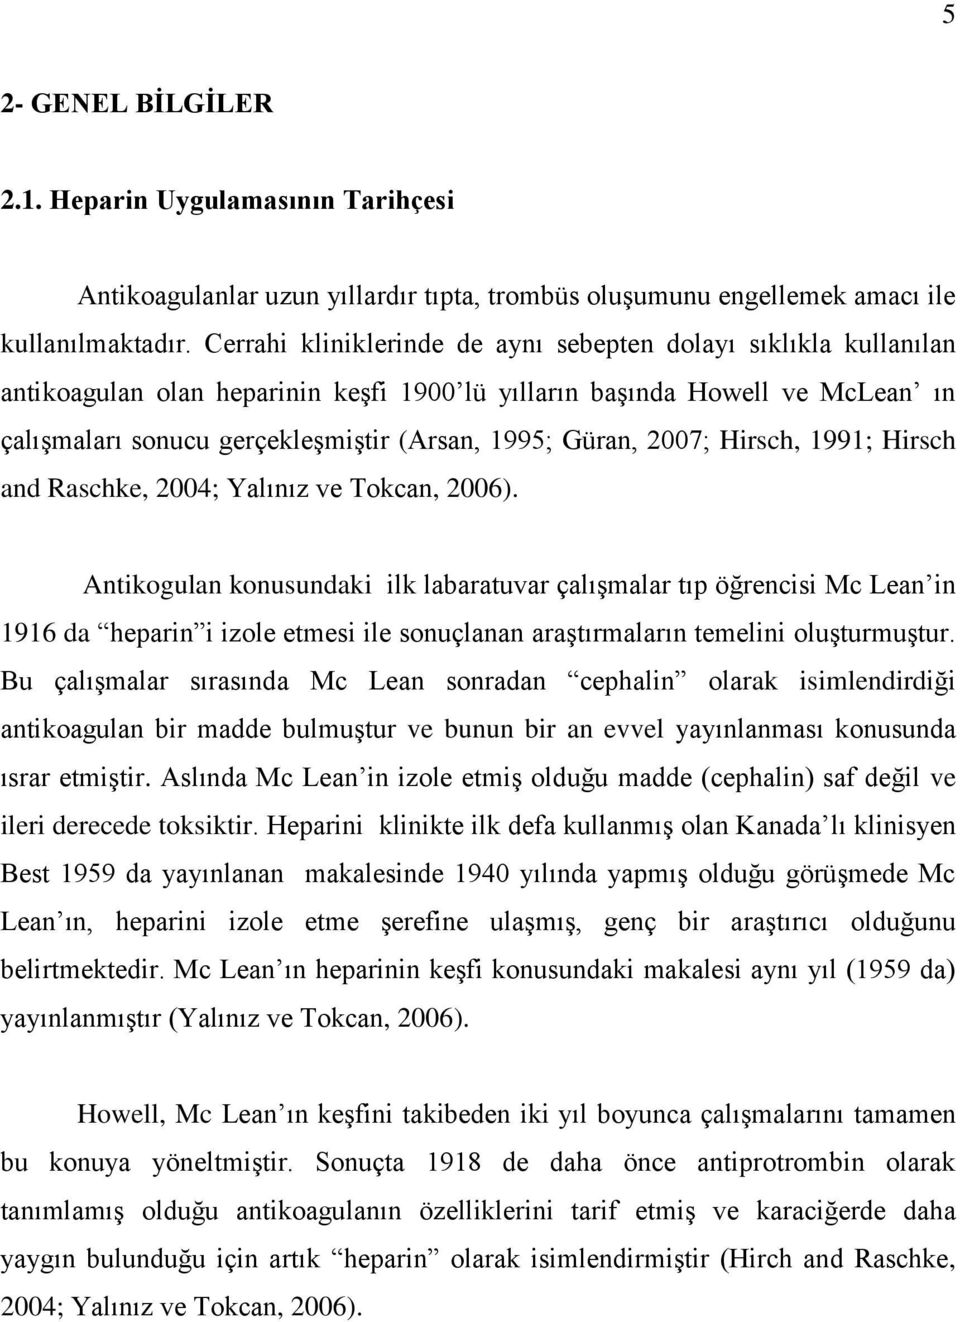 Güran, 2007; Hirsch, 1991; Hirsch and Raschke, 2004; Yalınız ve Tokcan, 2006).